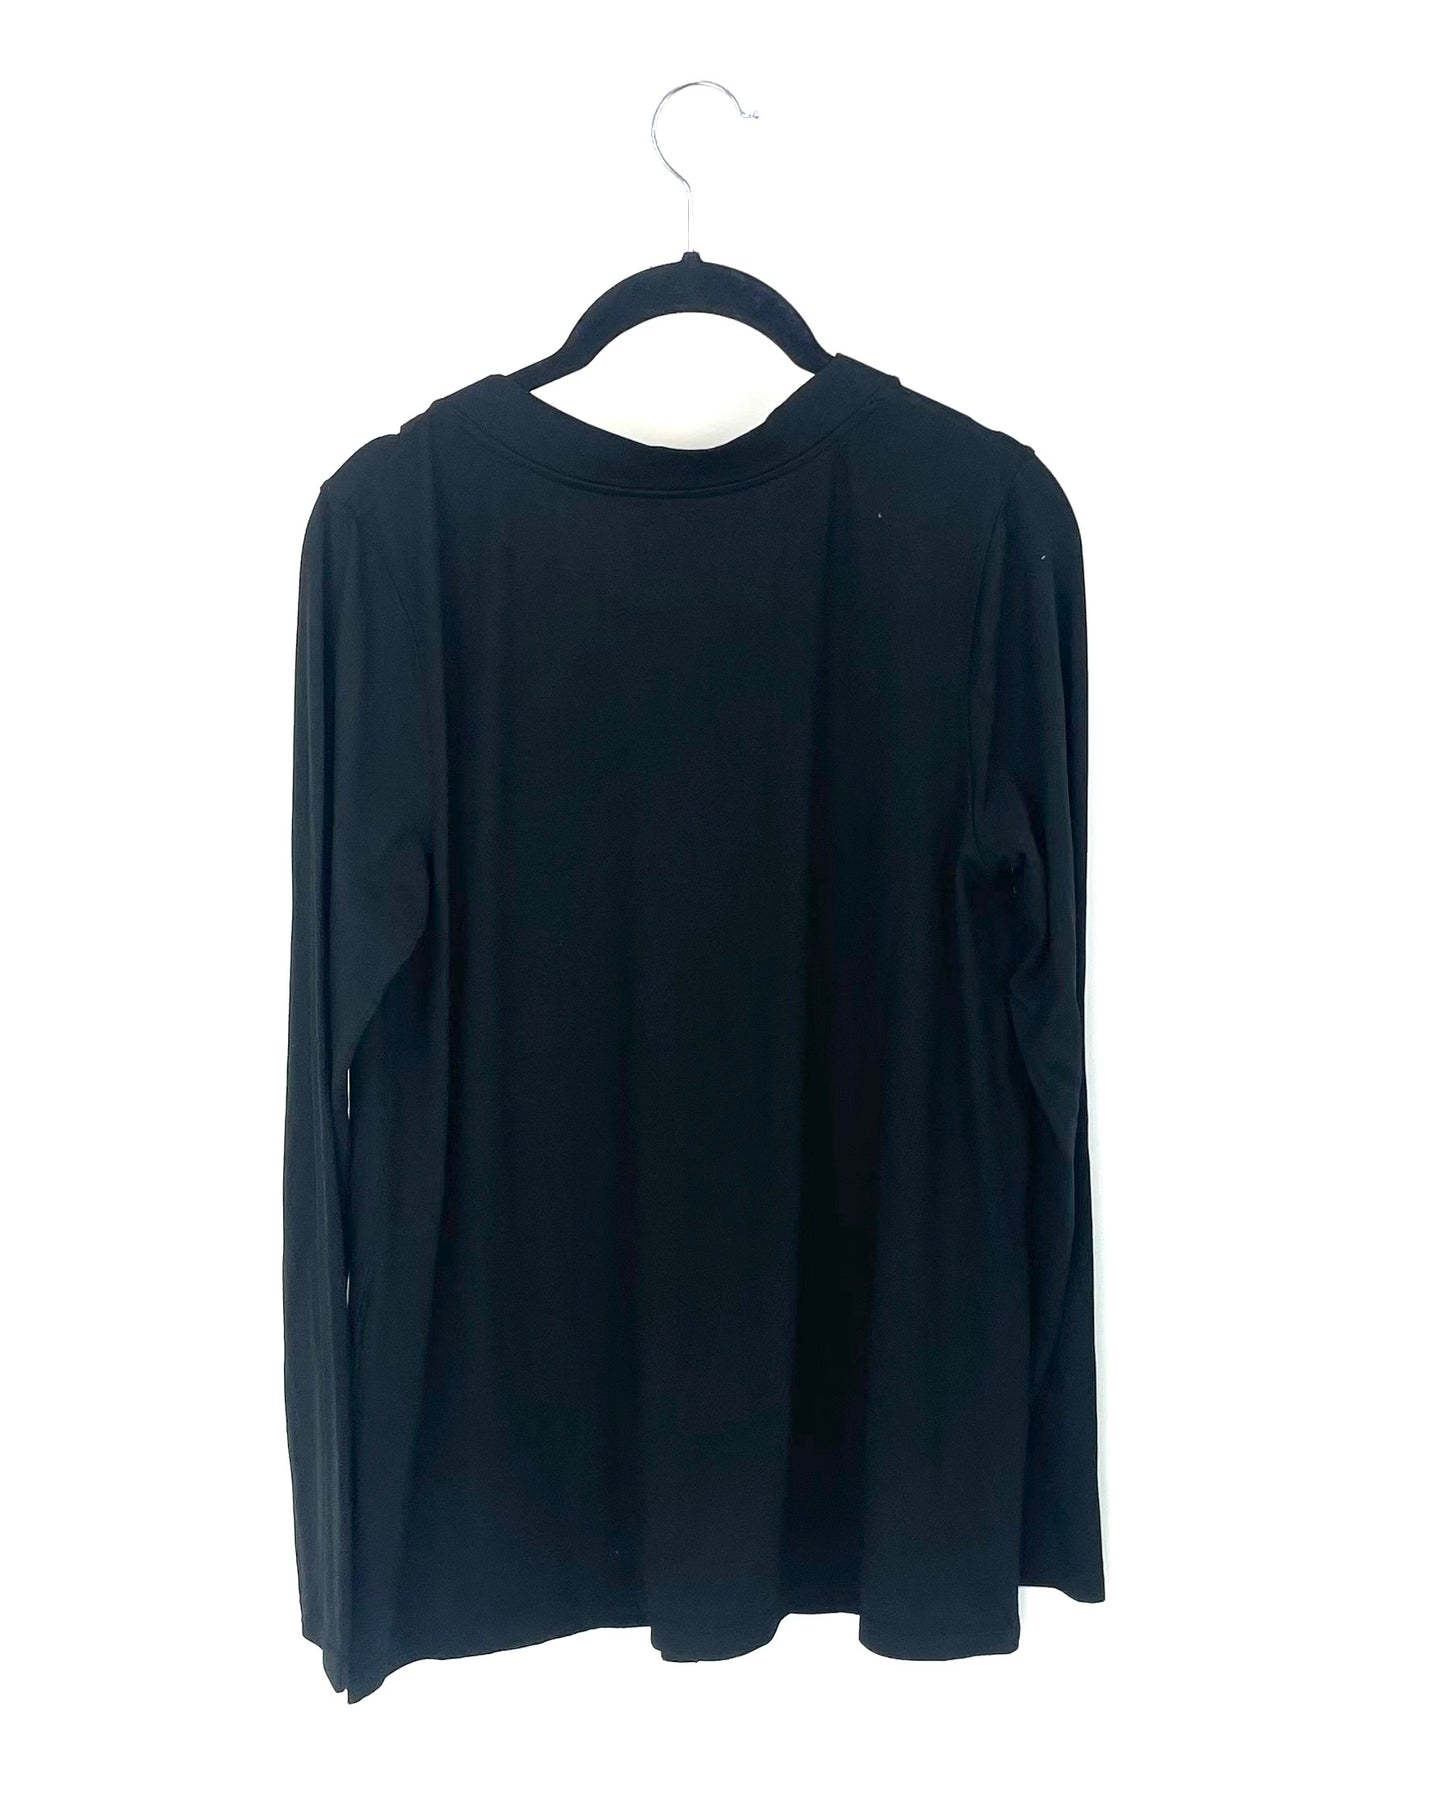 Black Lounge Cardigan - Size 6/8 – The Fashion Foundation